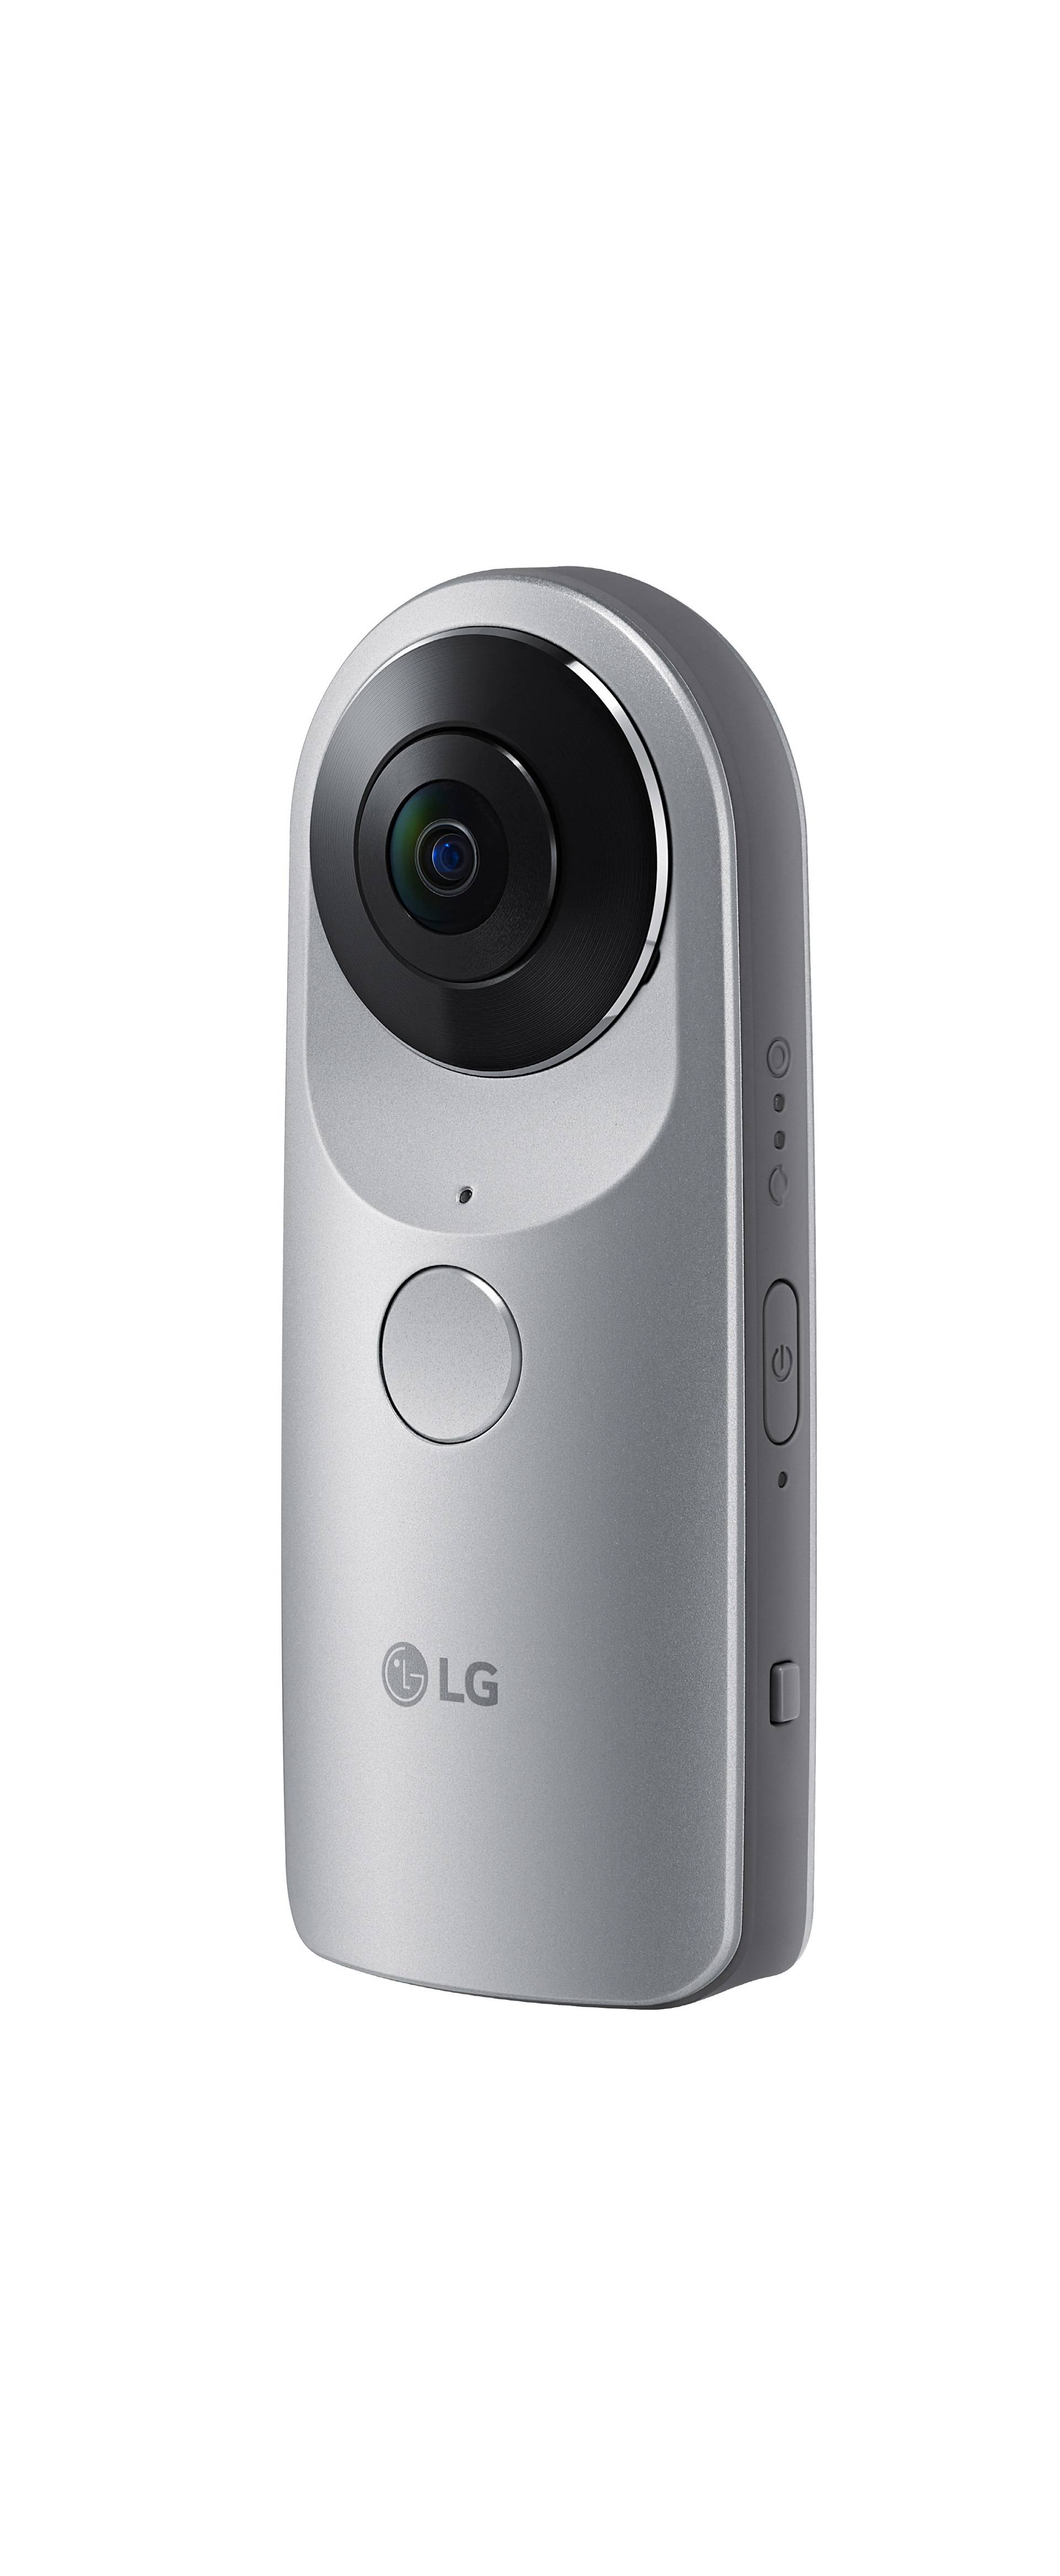 G5 je prvi modularni LG kojim žele pokrenuti novu revoluciju